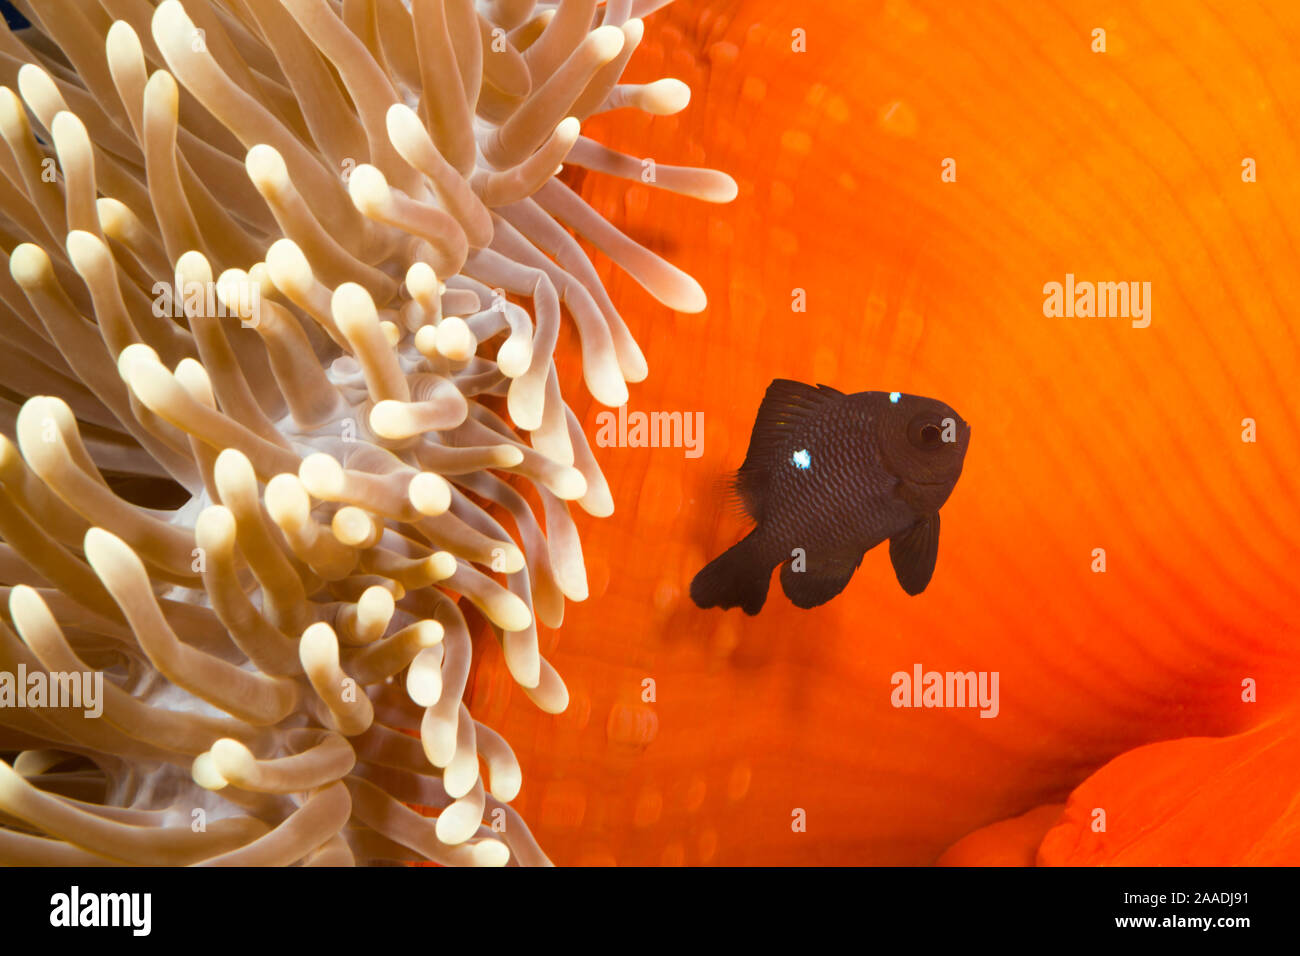 Three spot damselfish (Dascyllus trimaculatus) with Sea anemone home, Yap, Micronesia. Stock Photo